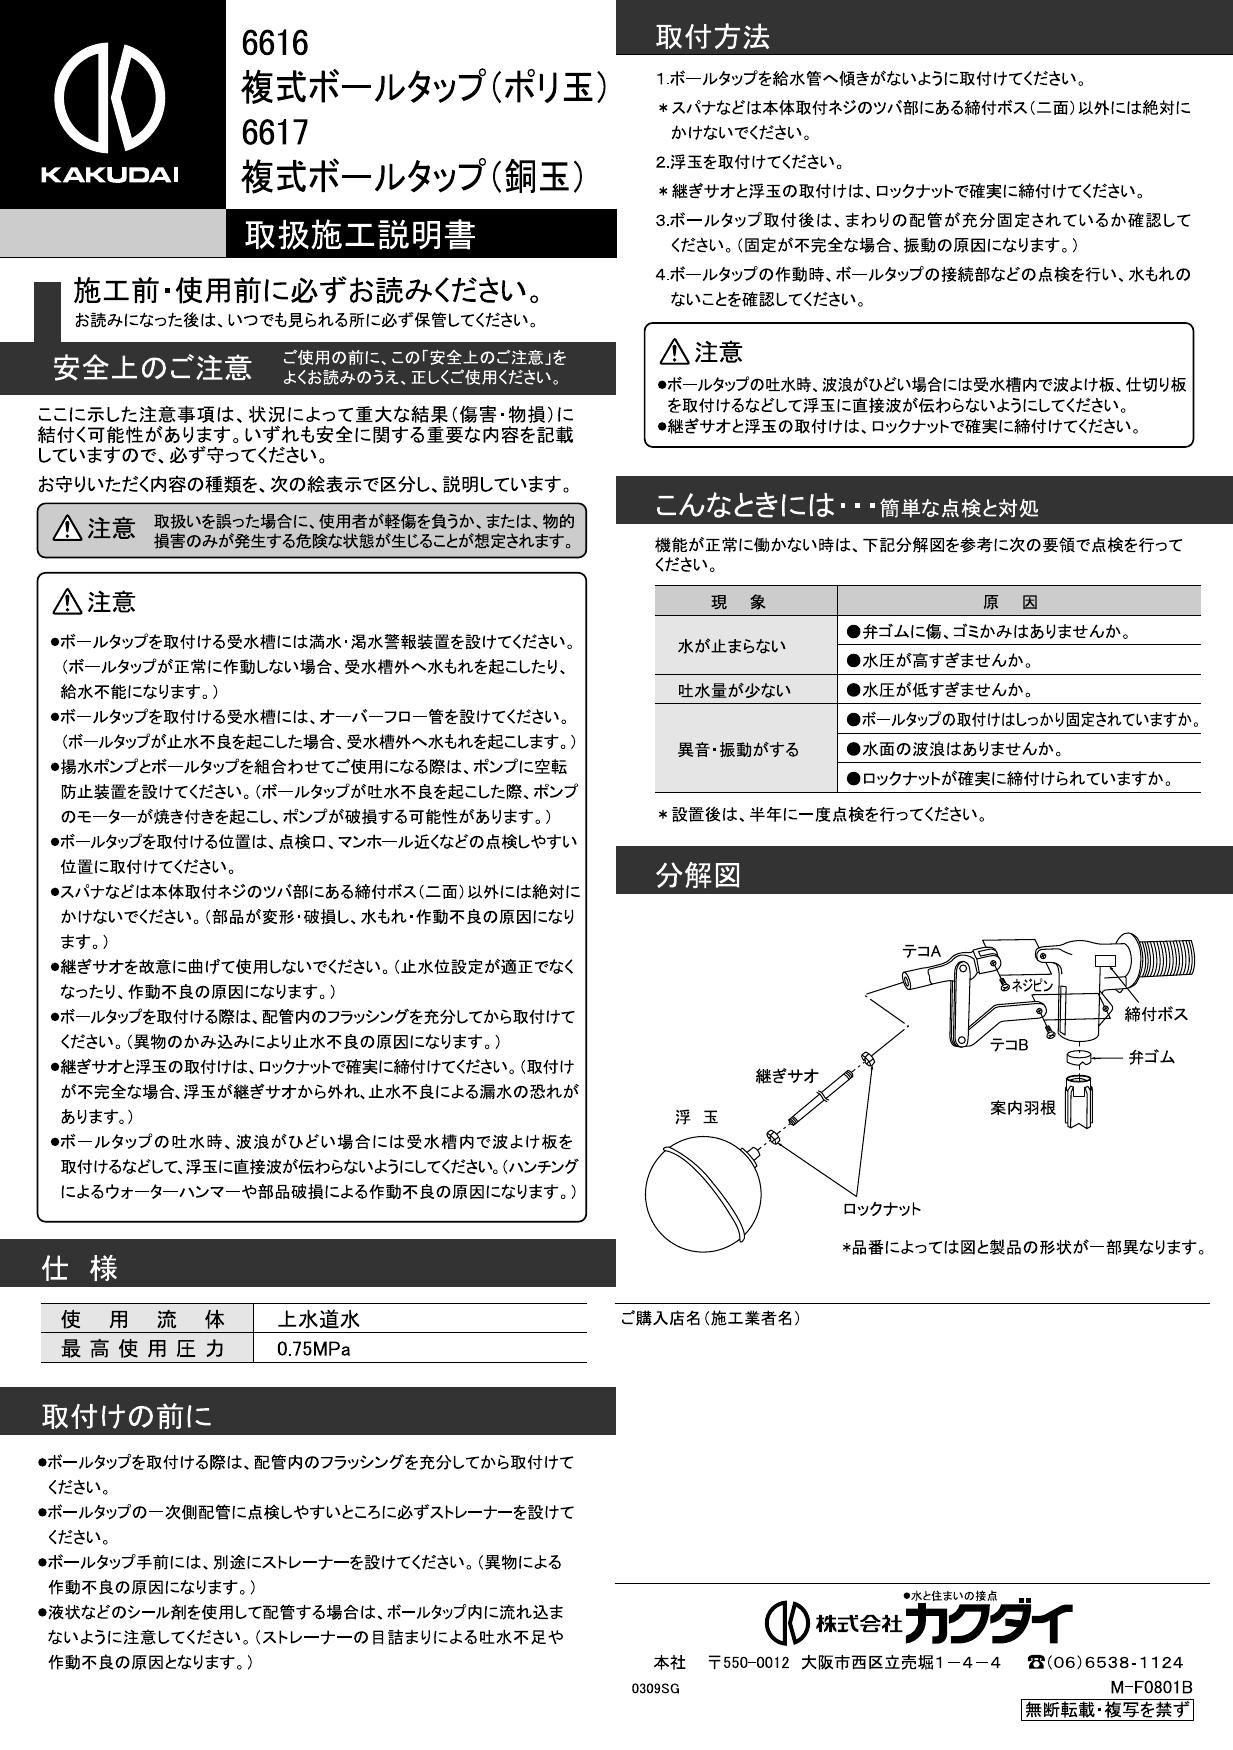 カクダイ 672-012-25 カクダイ メタカポリ(保温材つき)青 16 ☆-agba